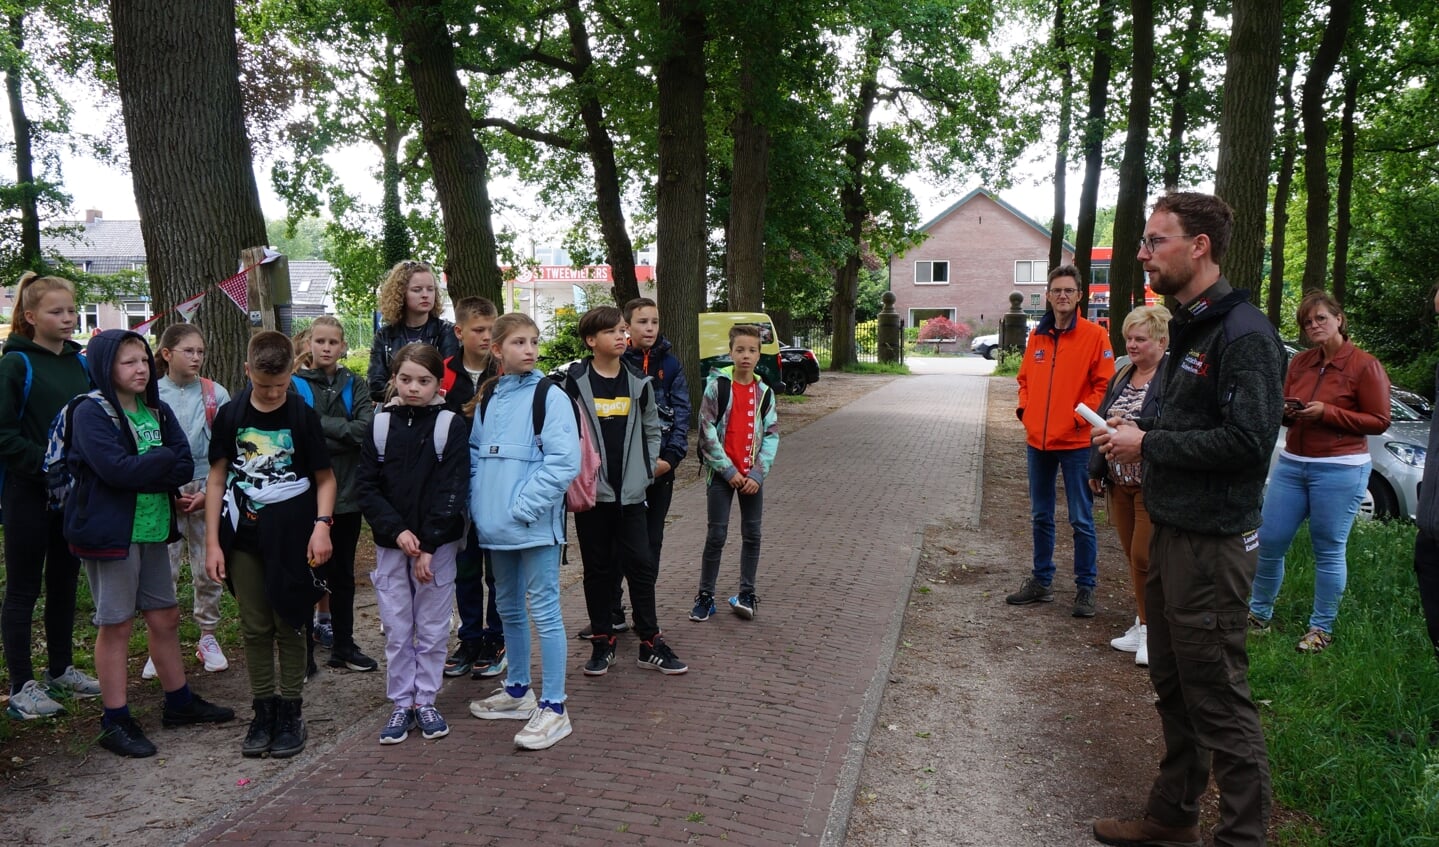 Boswachter René Visser van Geldersch Landschap en Kasteelen geeft de kinderen uitleg over het gebied.